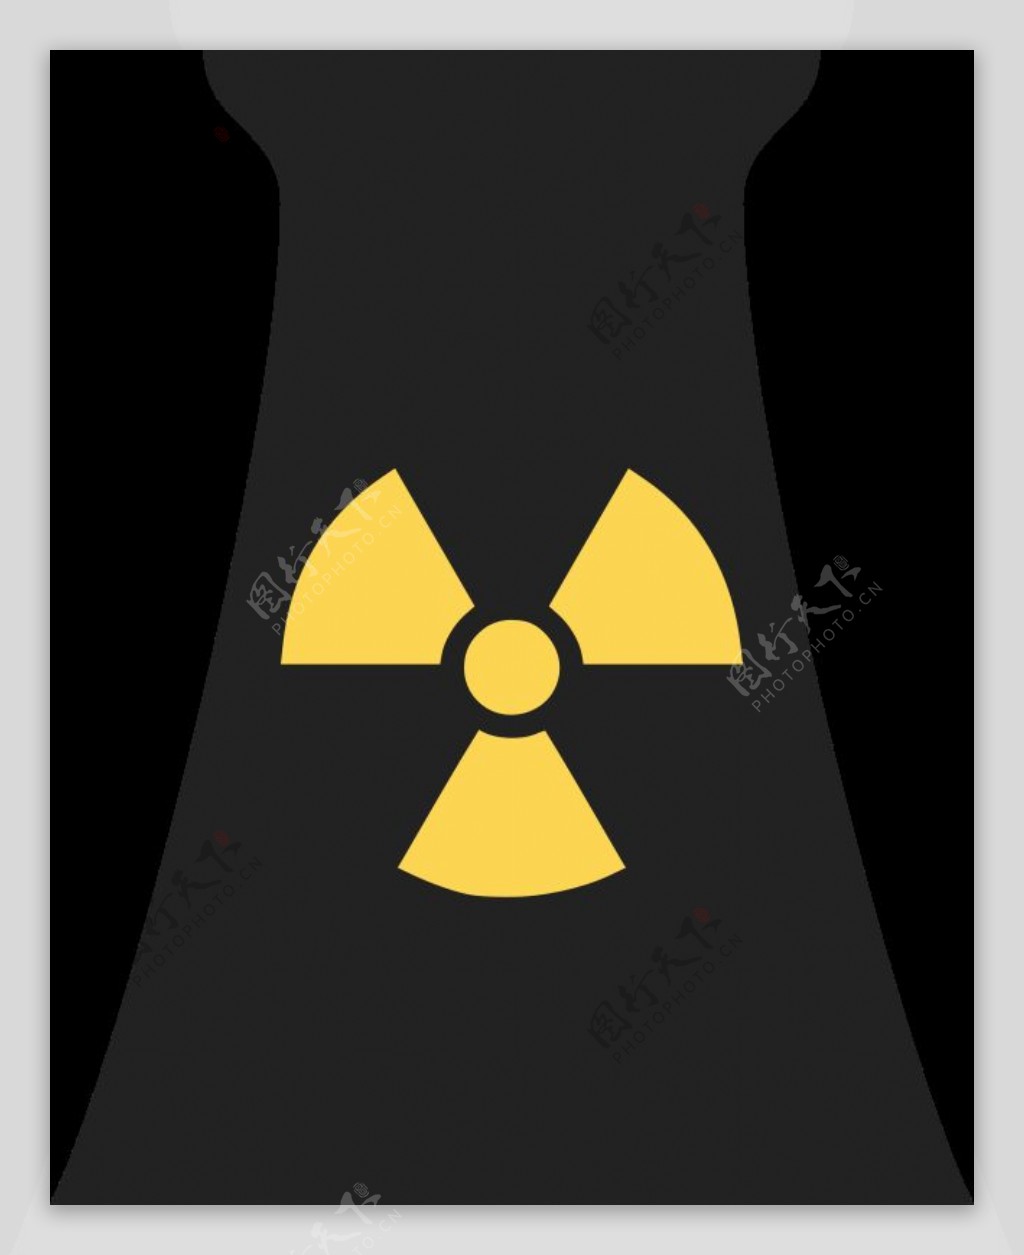 核电站的符号1